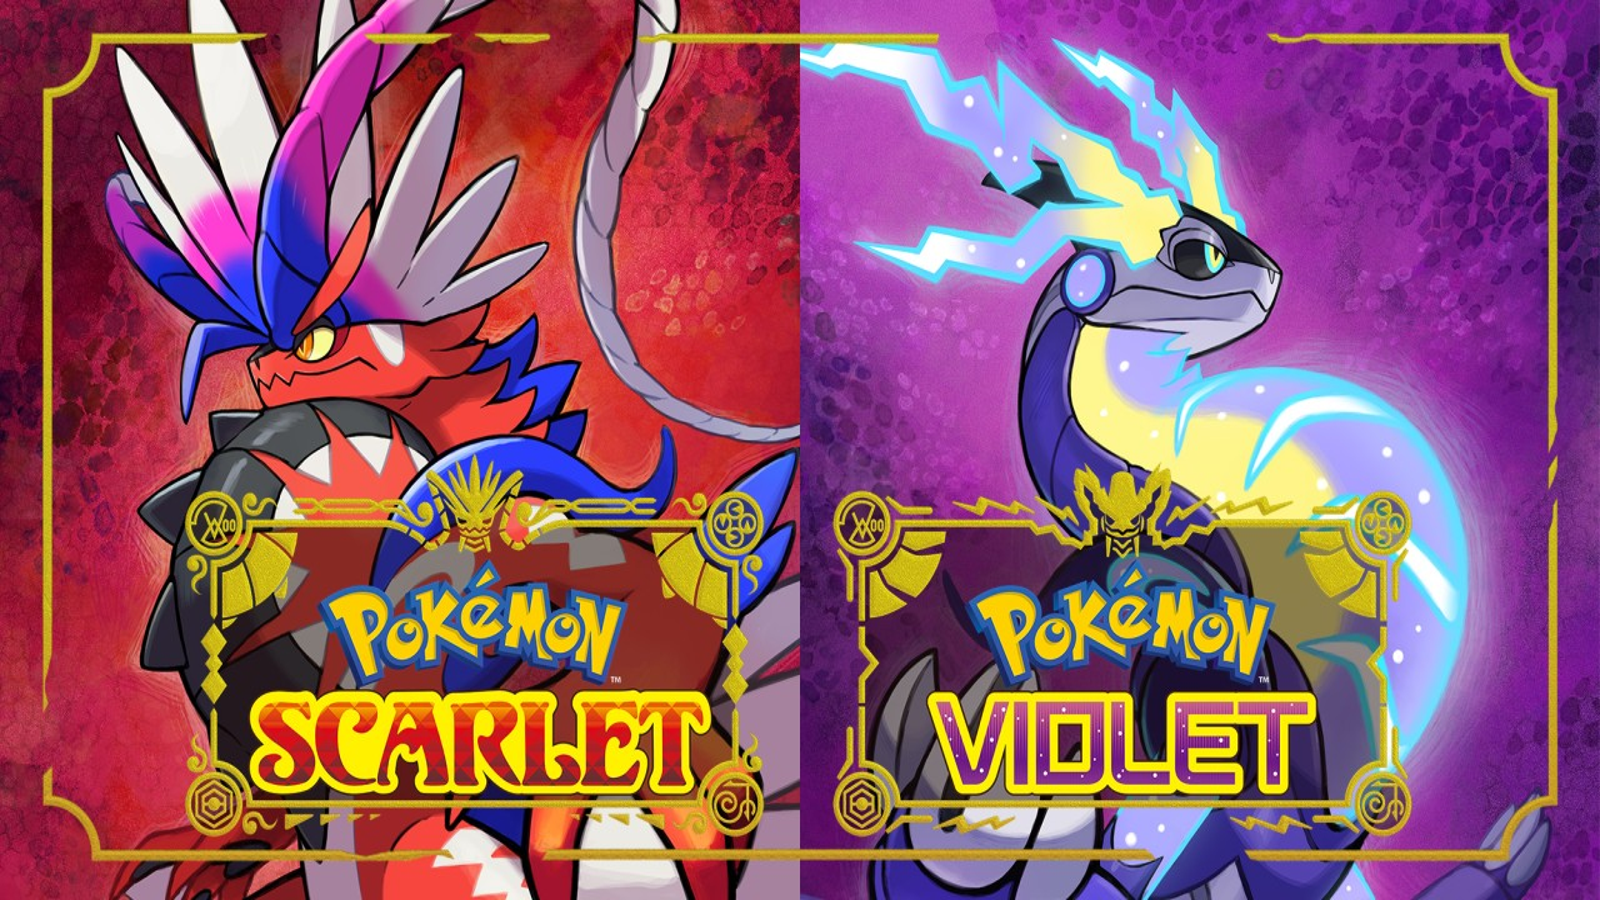 Pokémon Scarlet & Violet: Data de lançamento, preços, história e mais